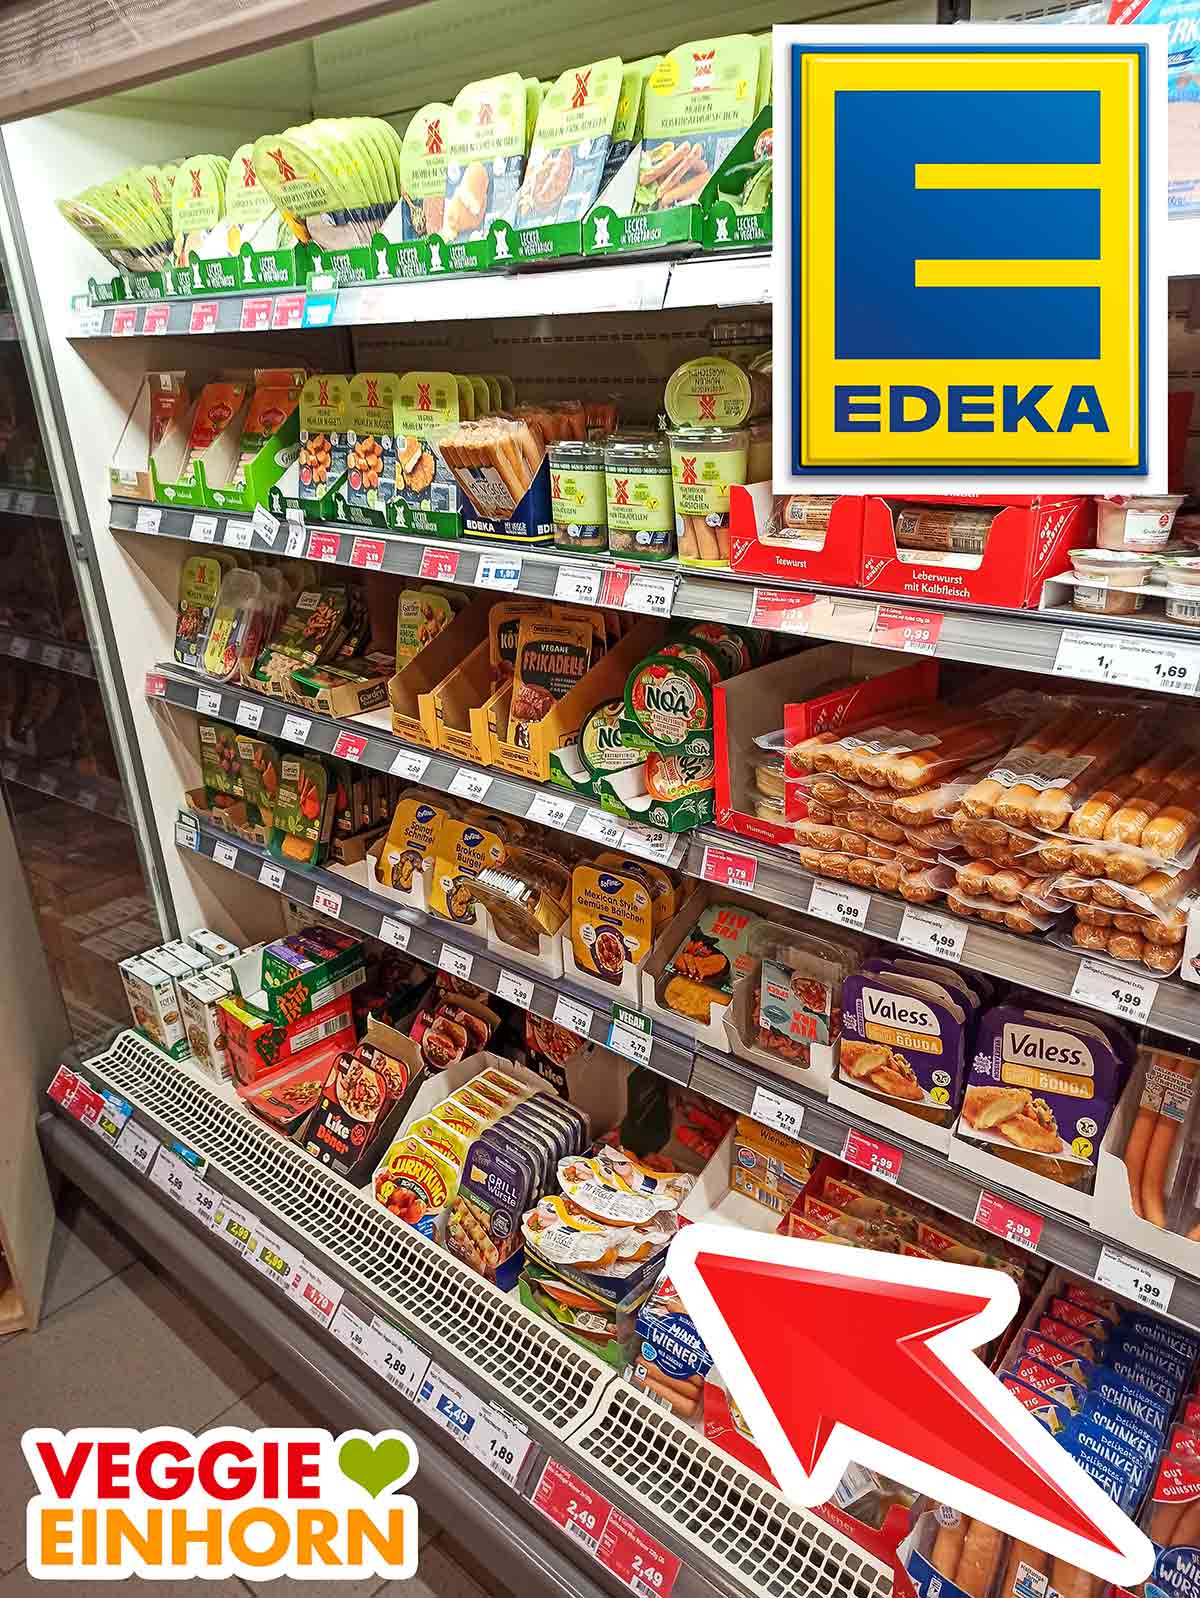 Vegane Fleischersatz Produkte im Kühlregal bei Edeka